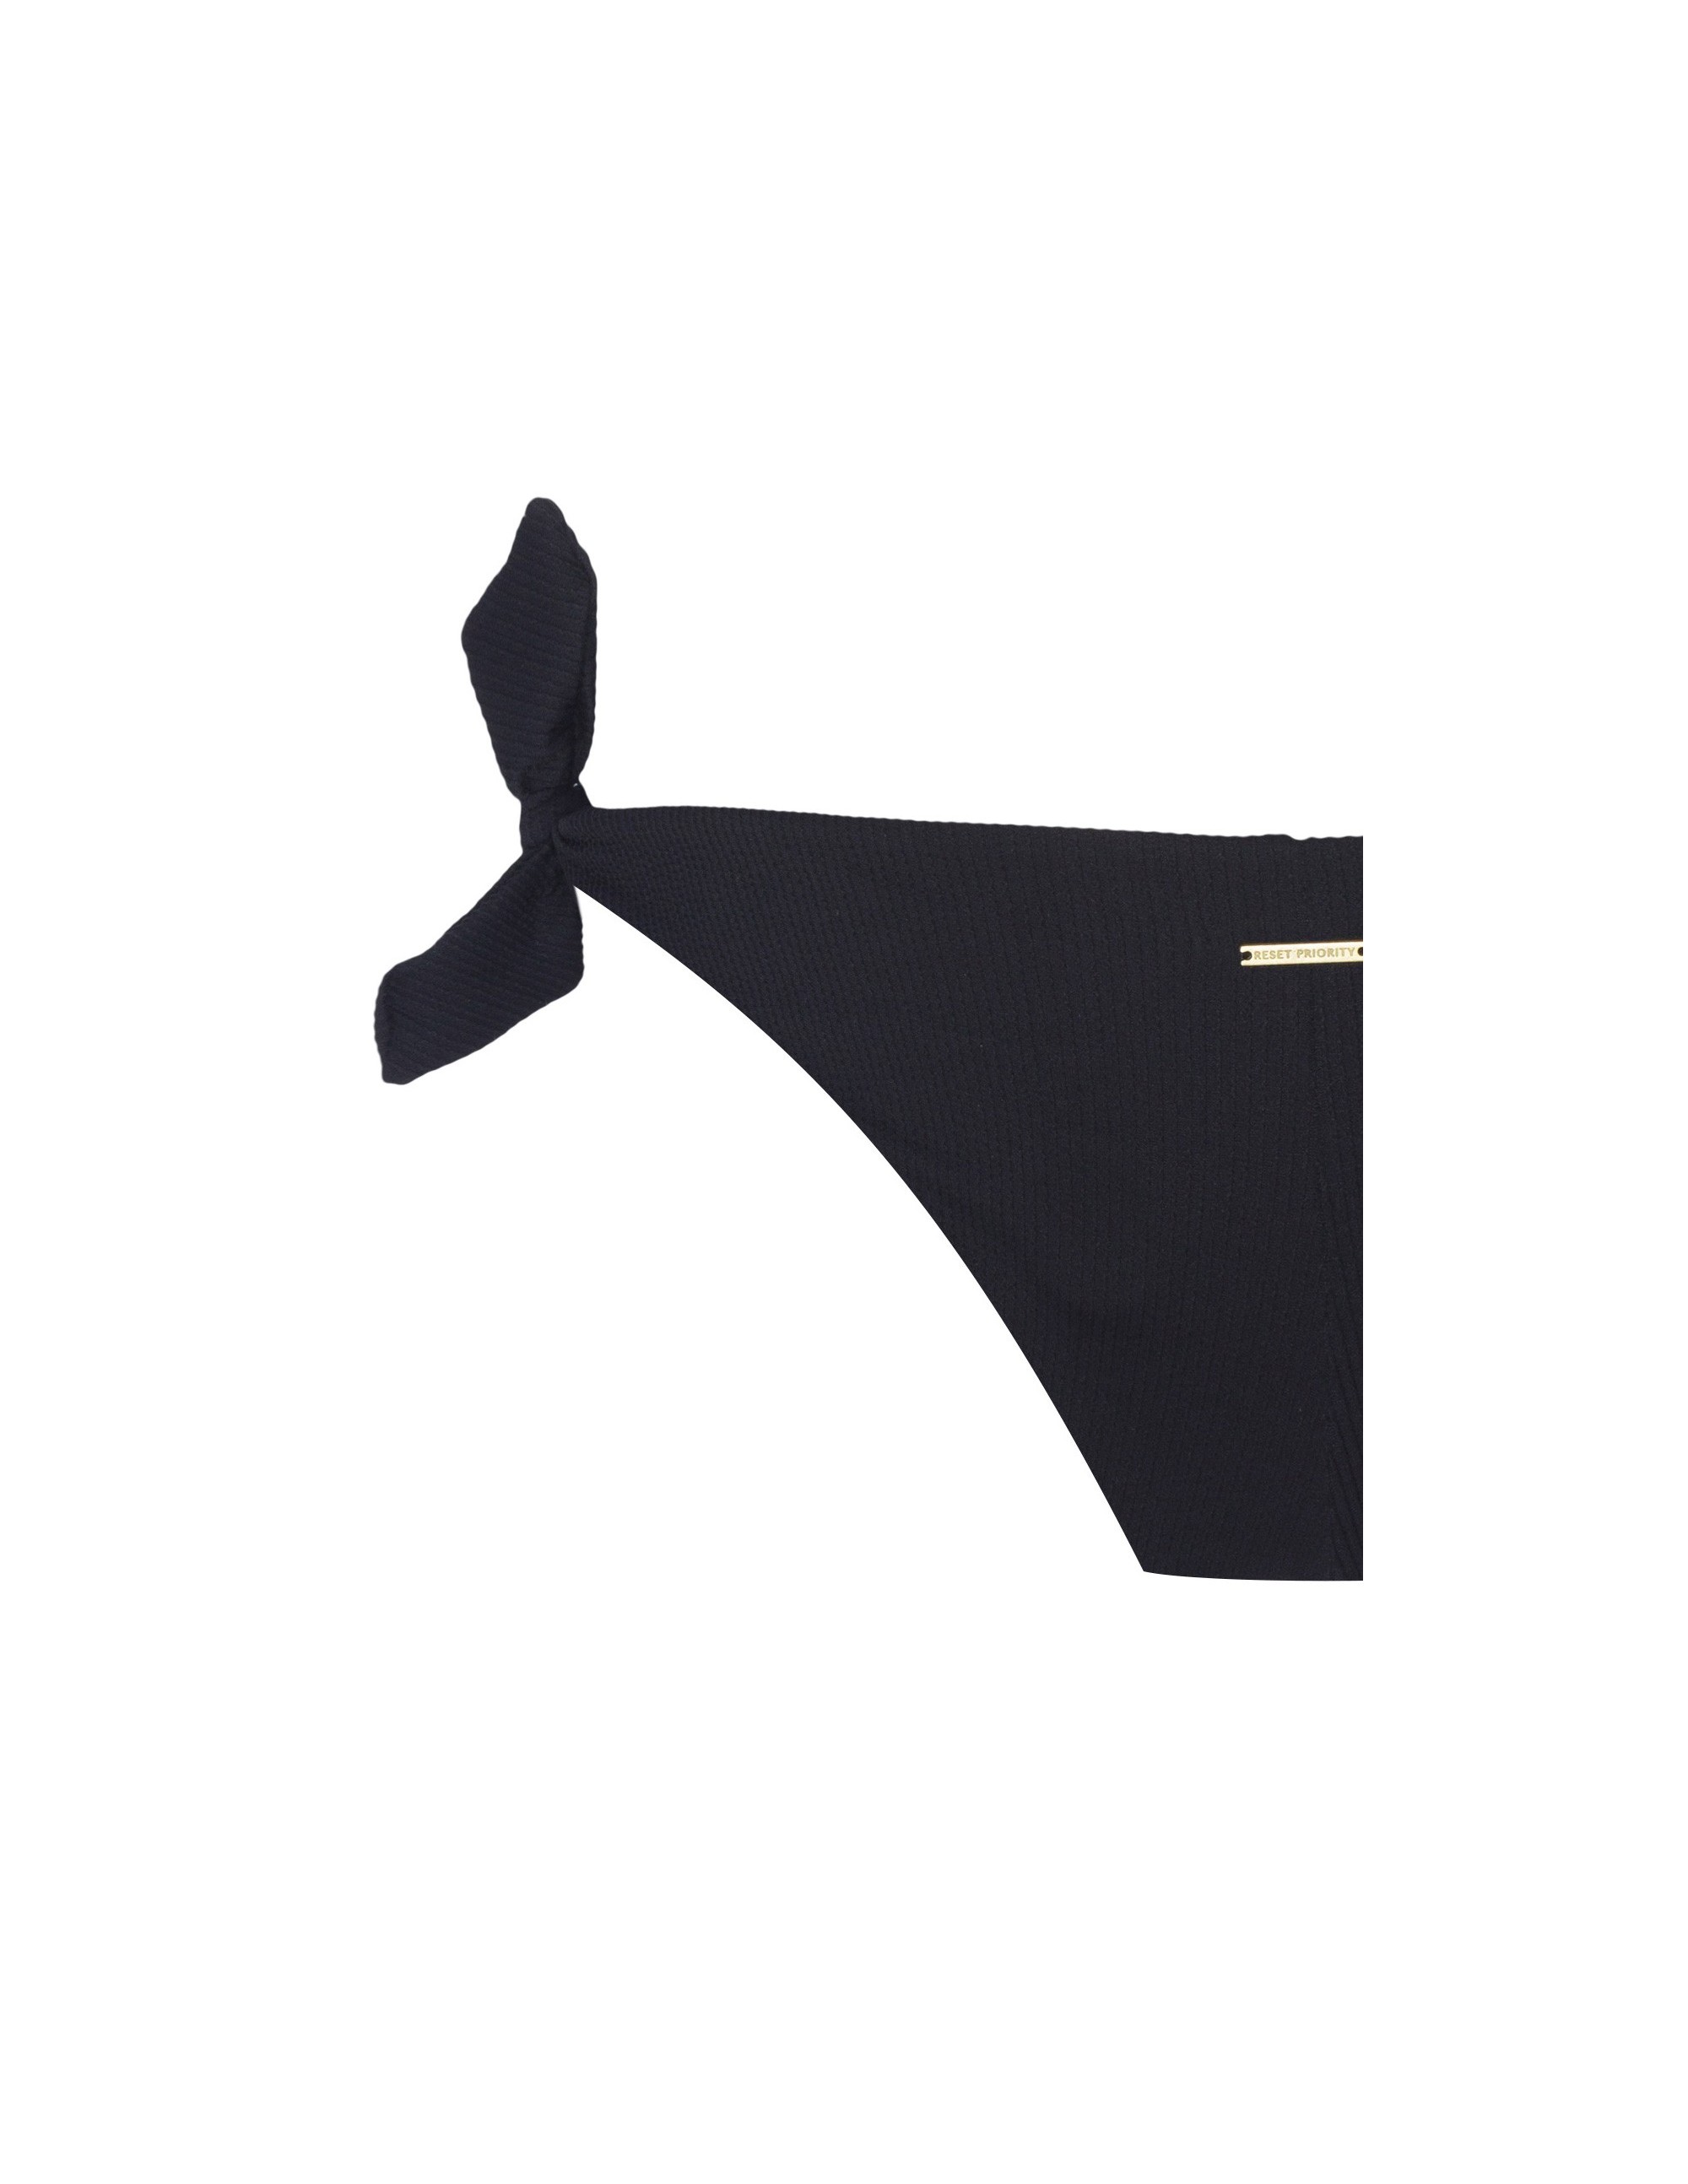 MISALI bikini bottom - PANTHER